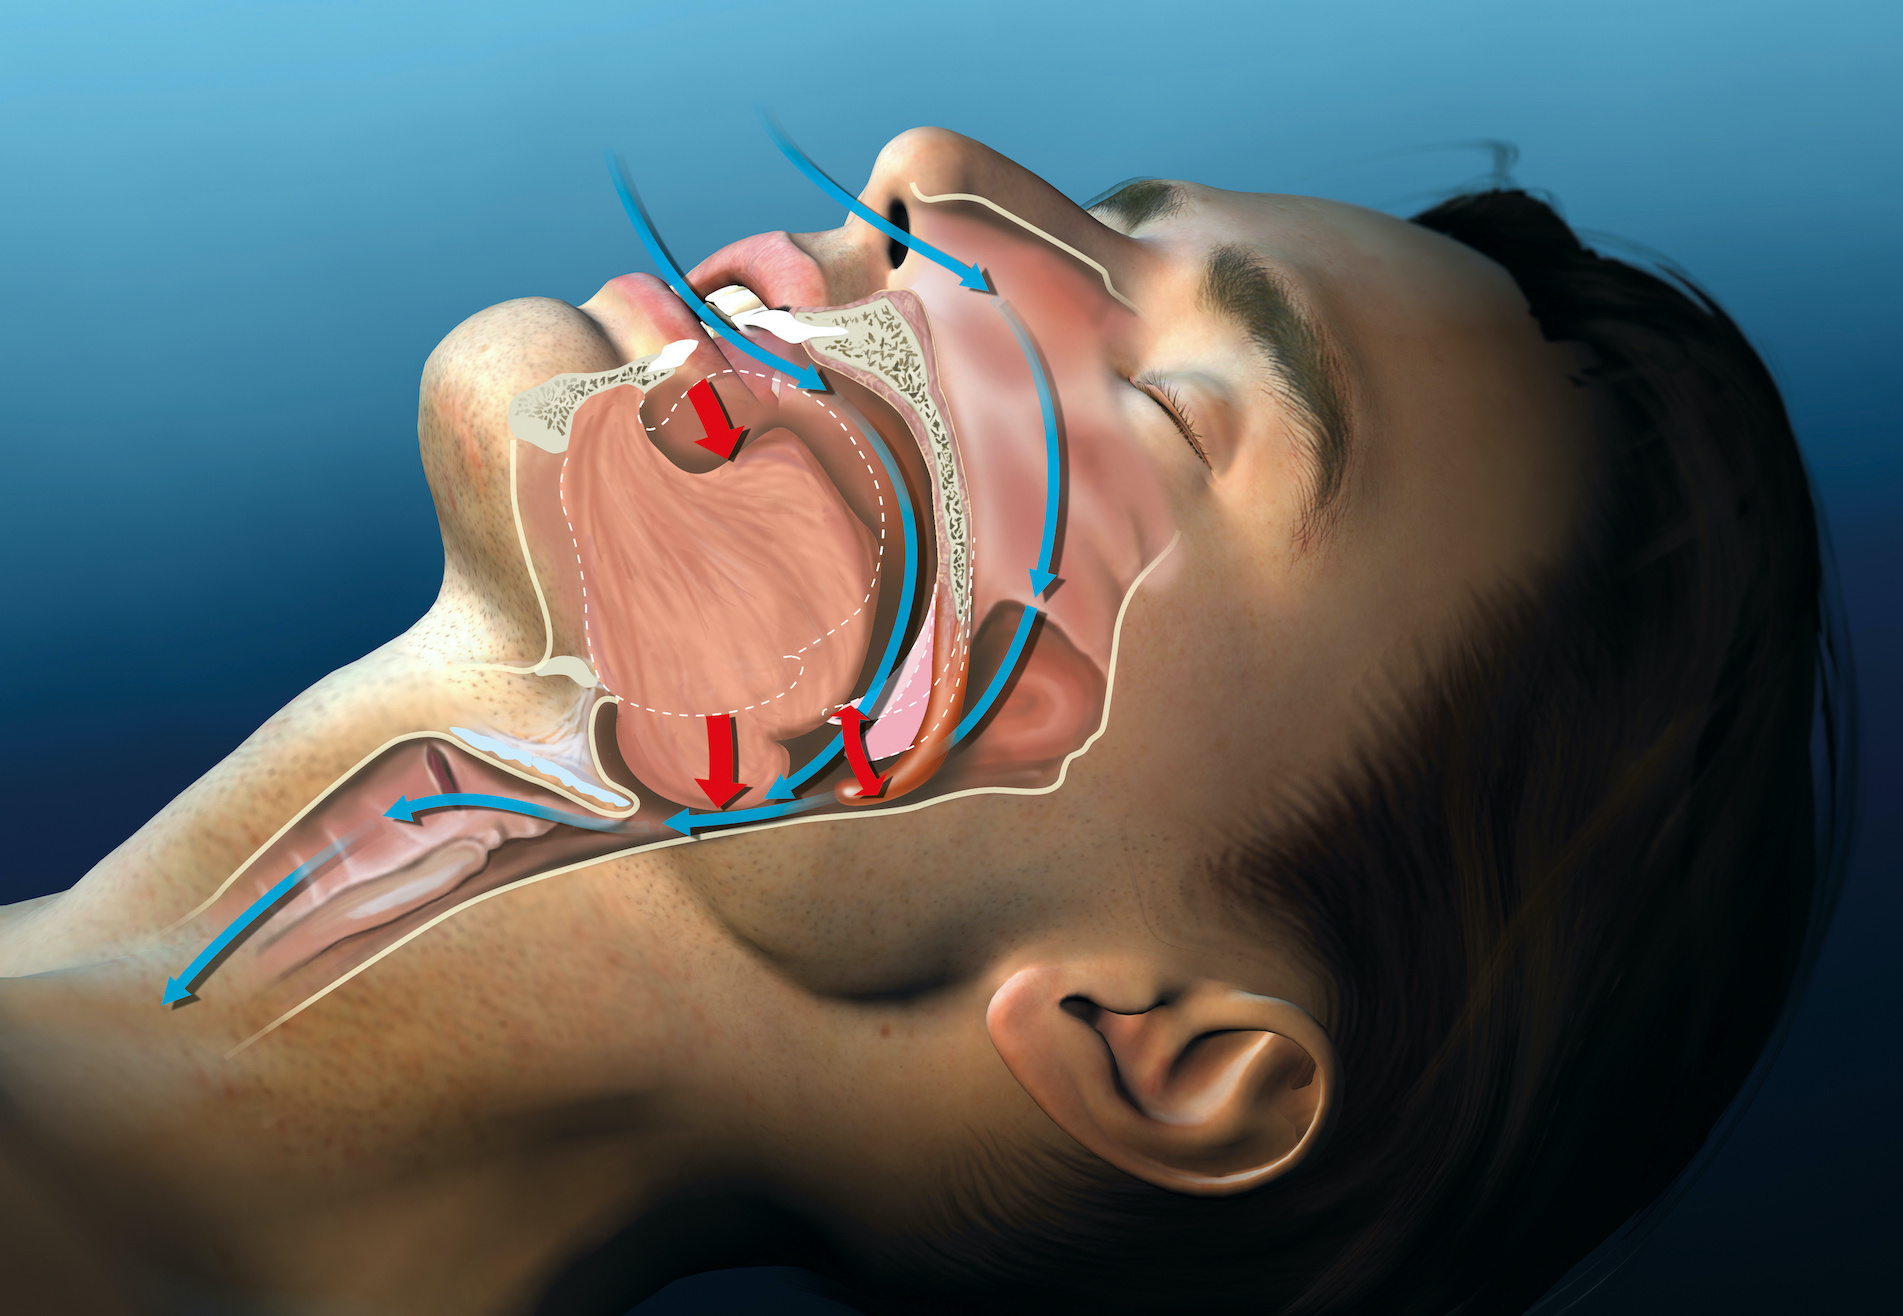 sleep apnea treatment in houston